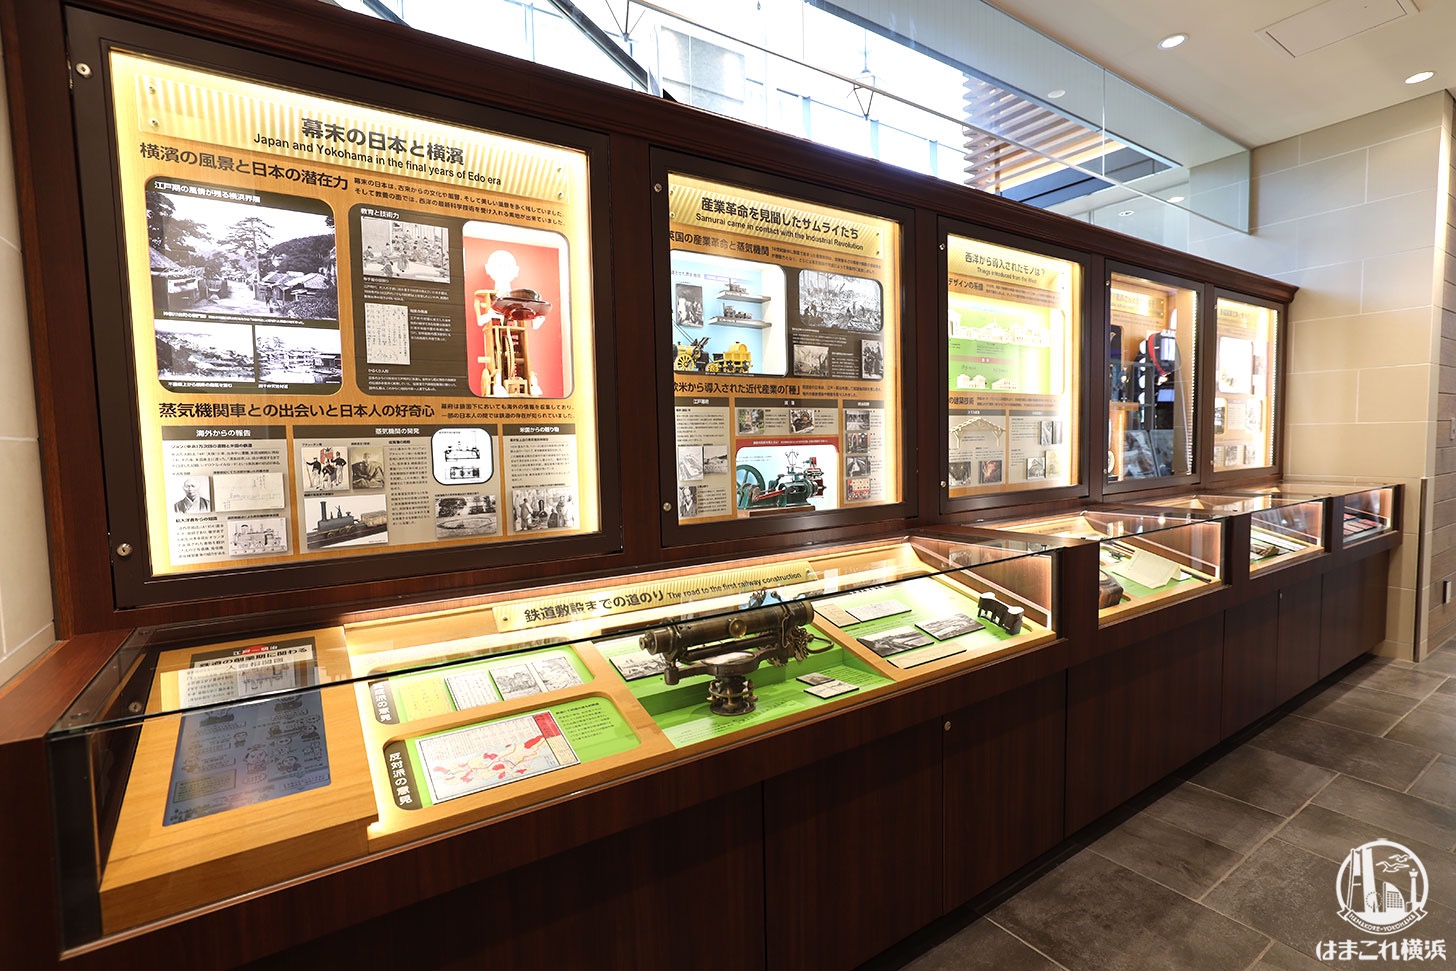 旧横濱鉄道歴史展示「旧横ギャラリー」に展示中の関連資料